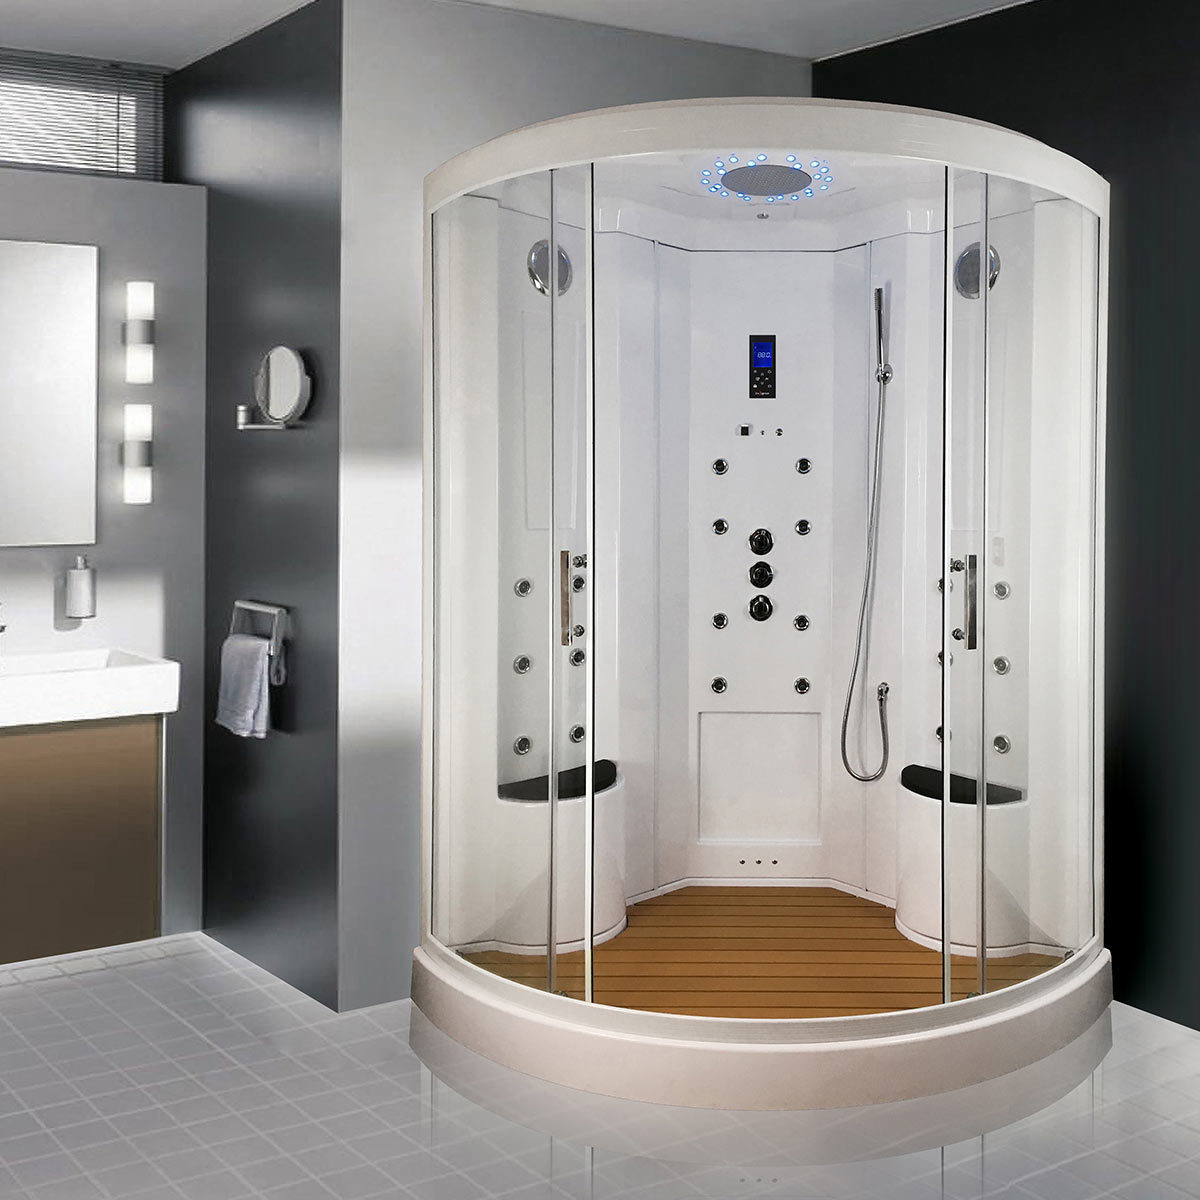 Insignia Xl Quadrant 2 Person Steam Shower Model Ins9000 Costco Uk